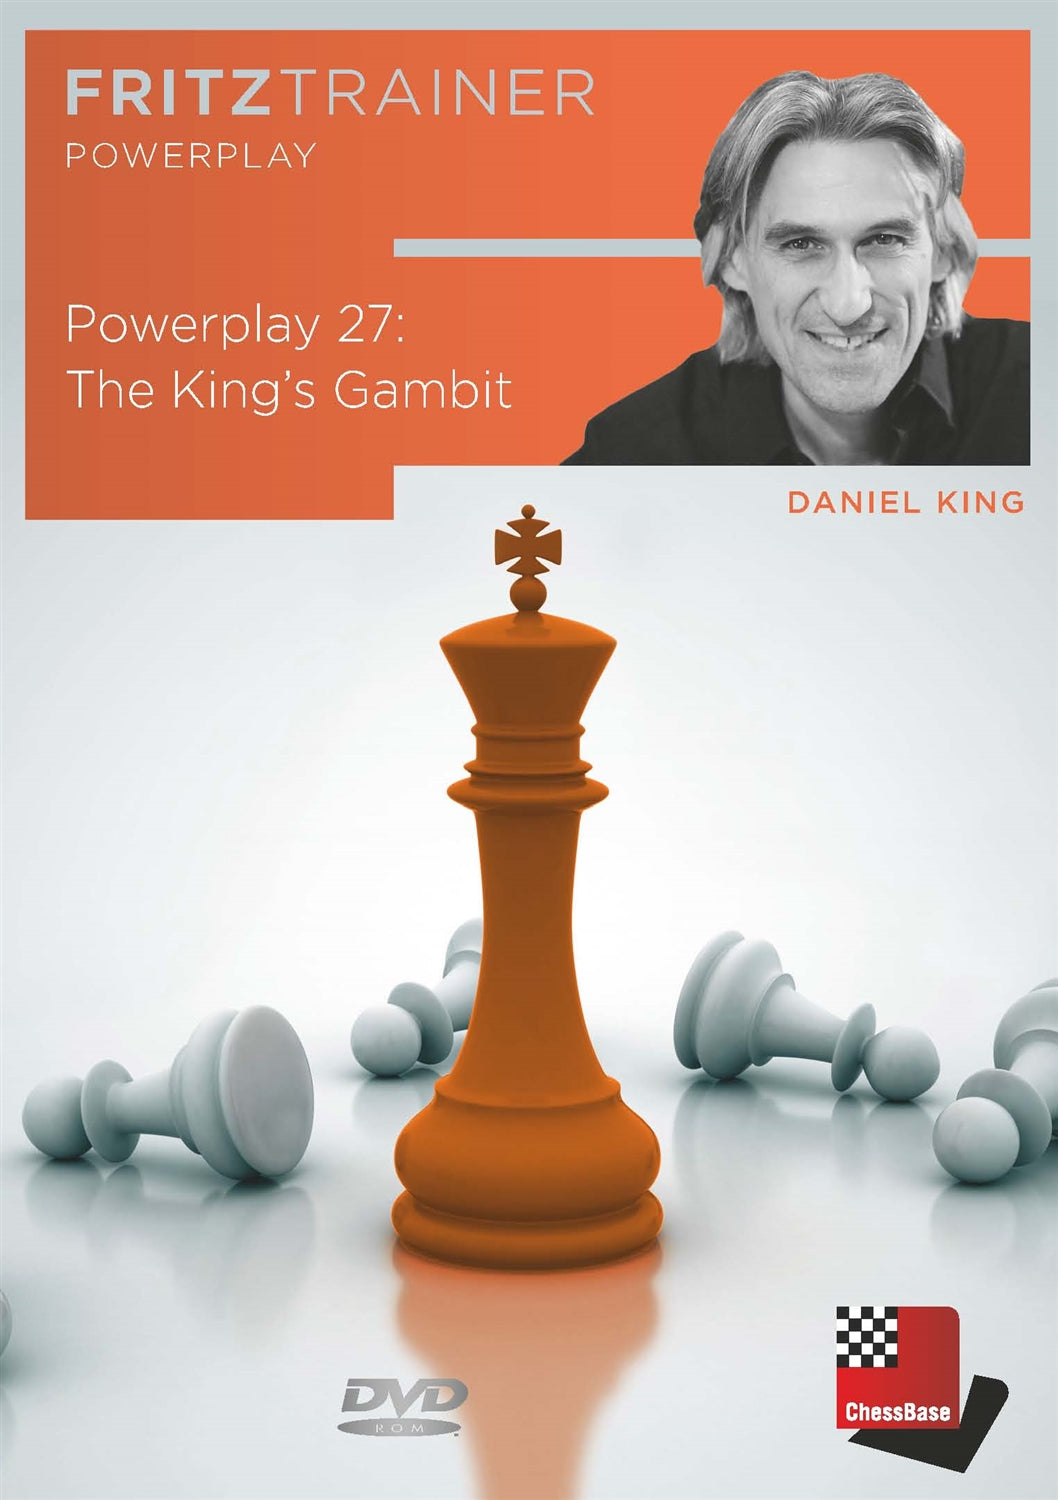 King's gambit